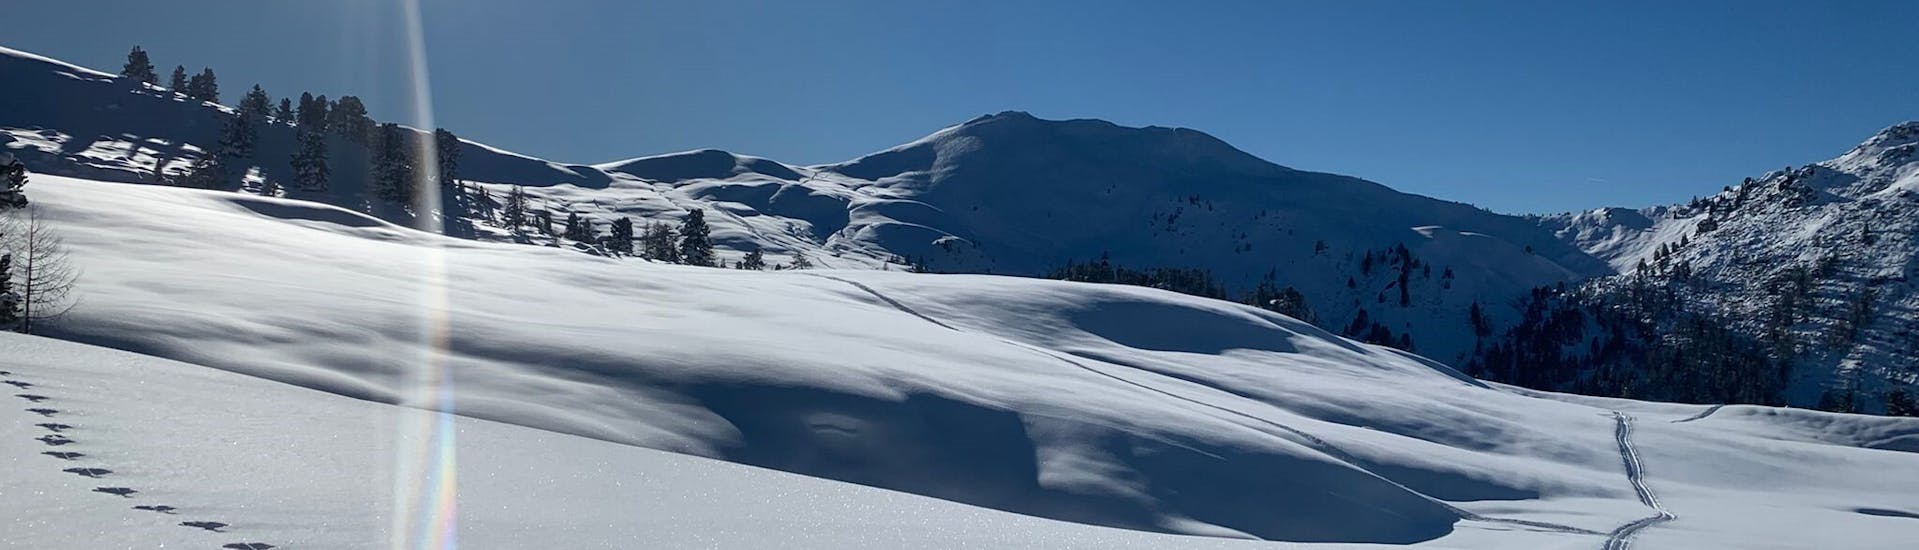 Die verschneiten Berge von Annaberg während dem Privaten Skikurs für Erwachsene aller Levels.